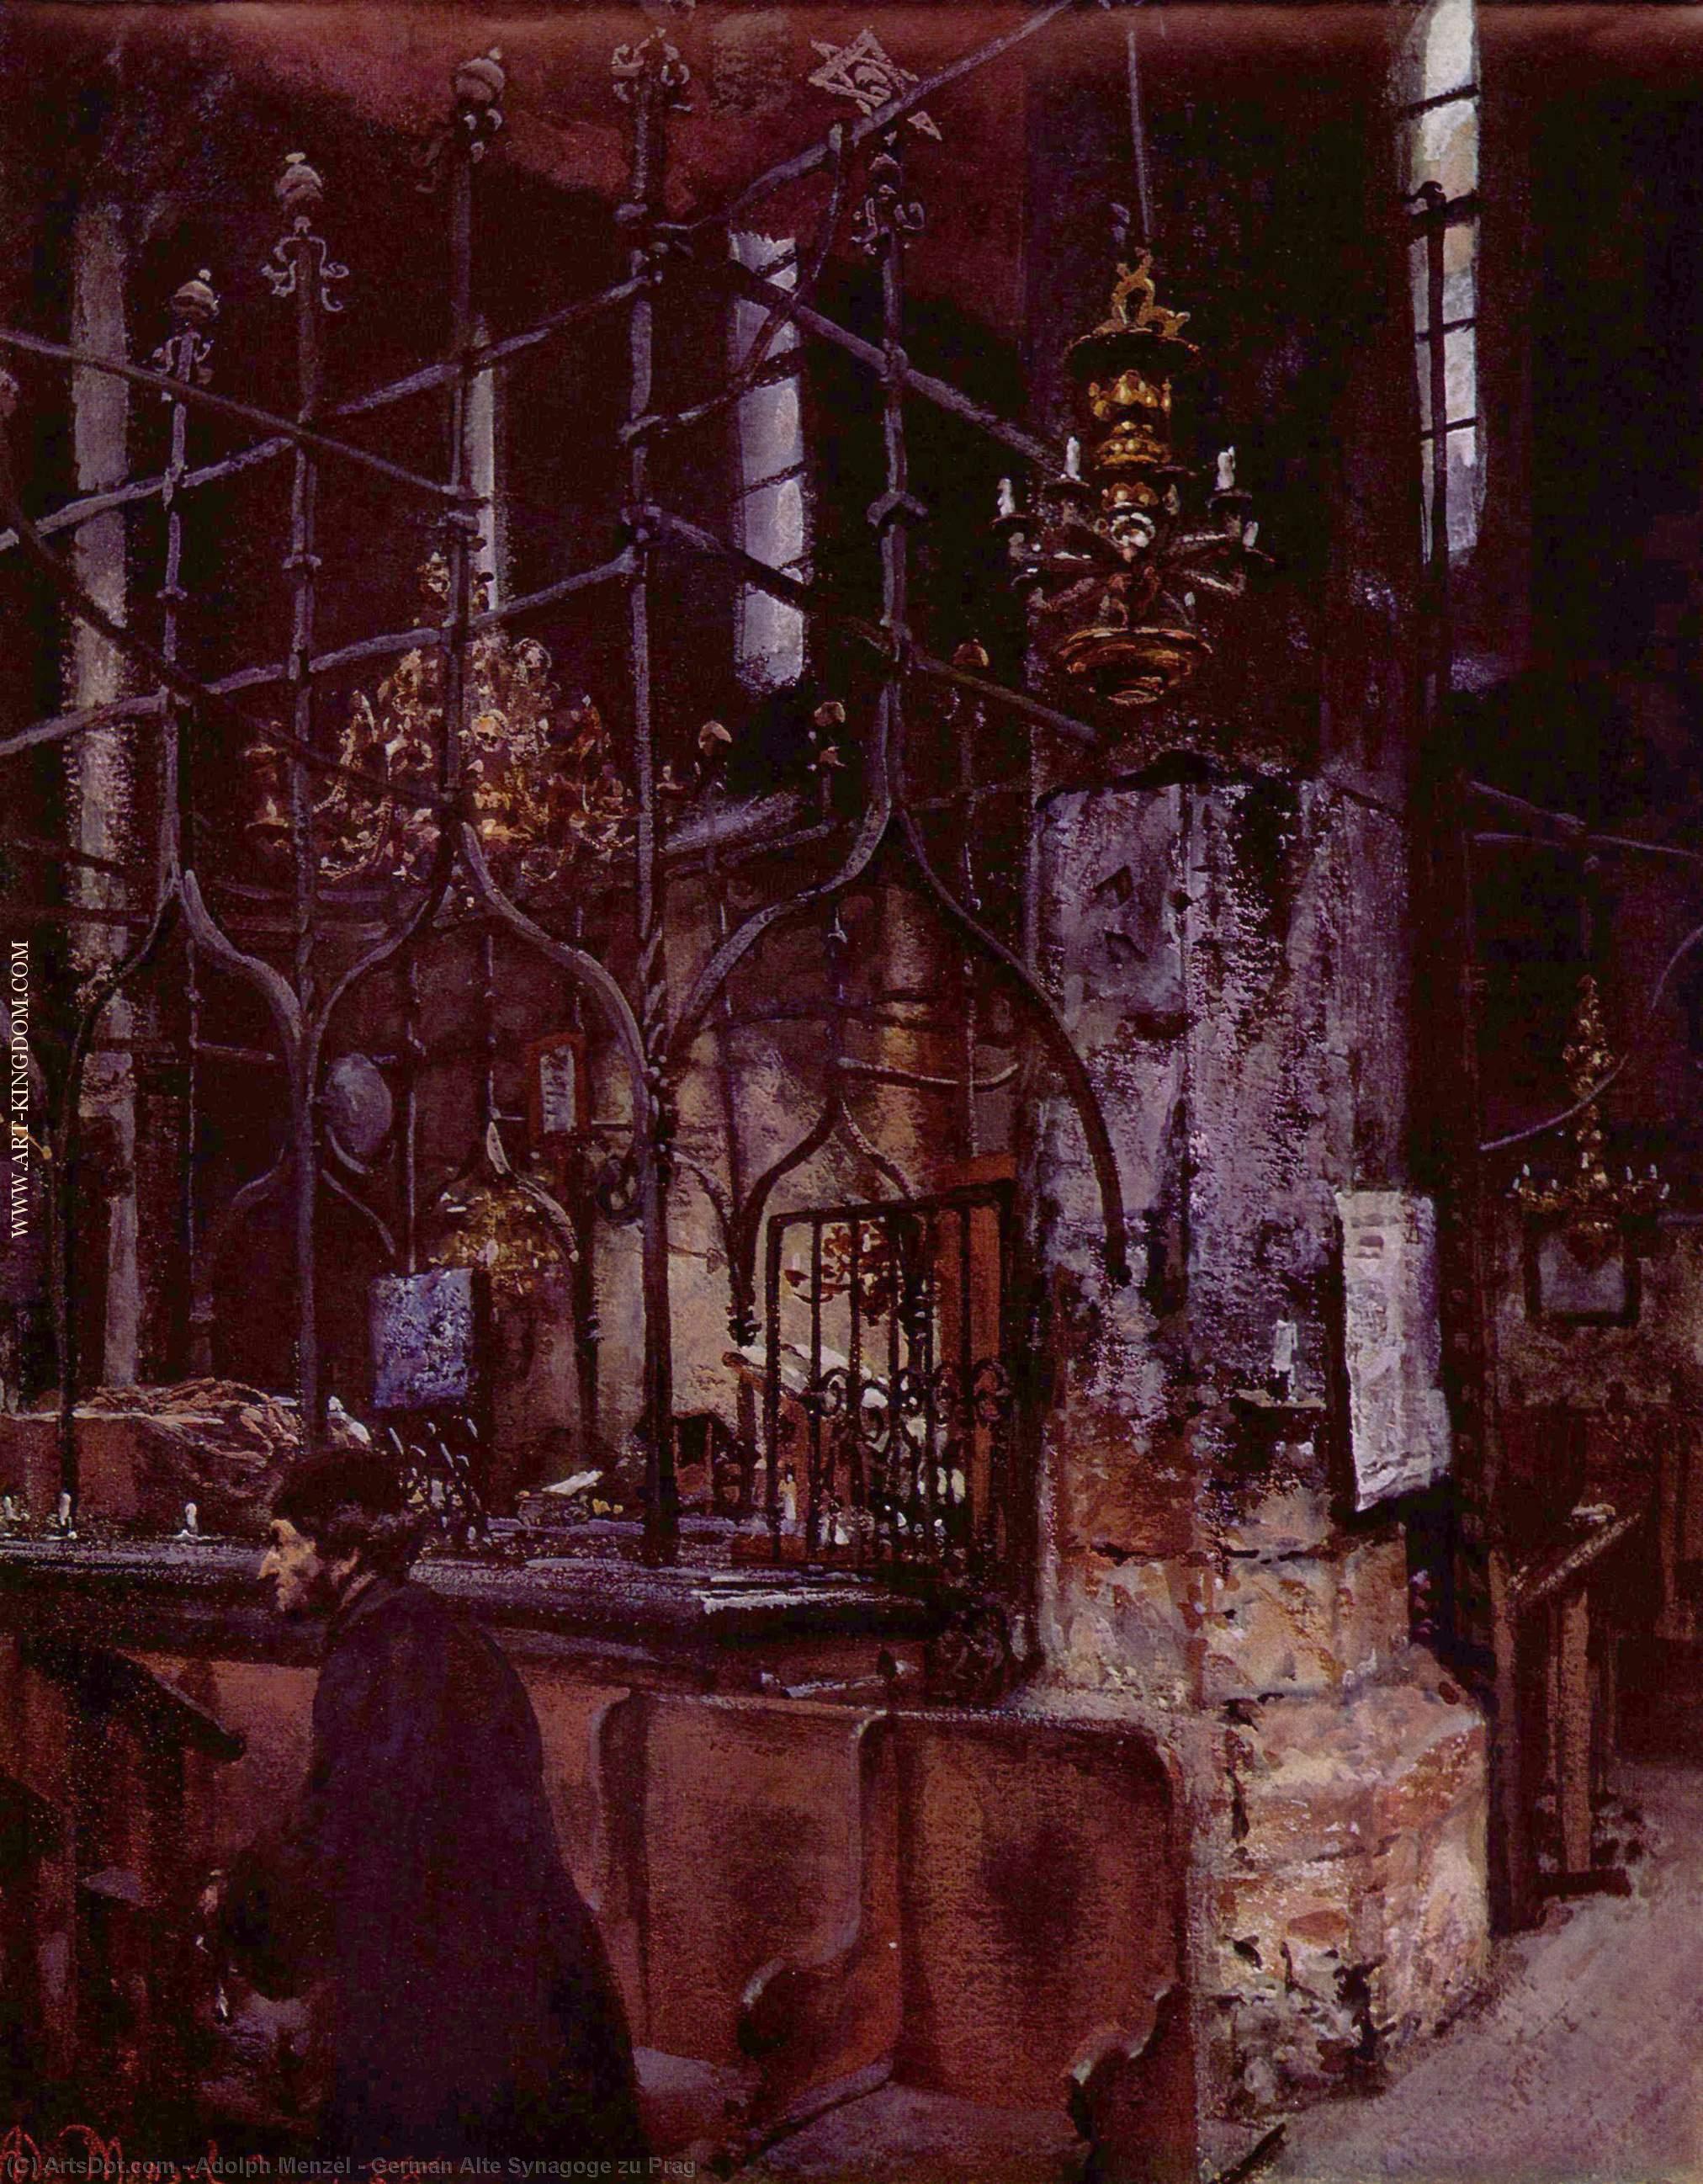 WikiOO.org - Enciklopedija likovnih umjetnosti - Slikarstvo, umjetnička djela Adolph Menzel - German Alte Synagoge zu Prag